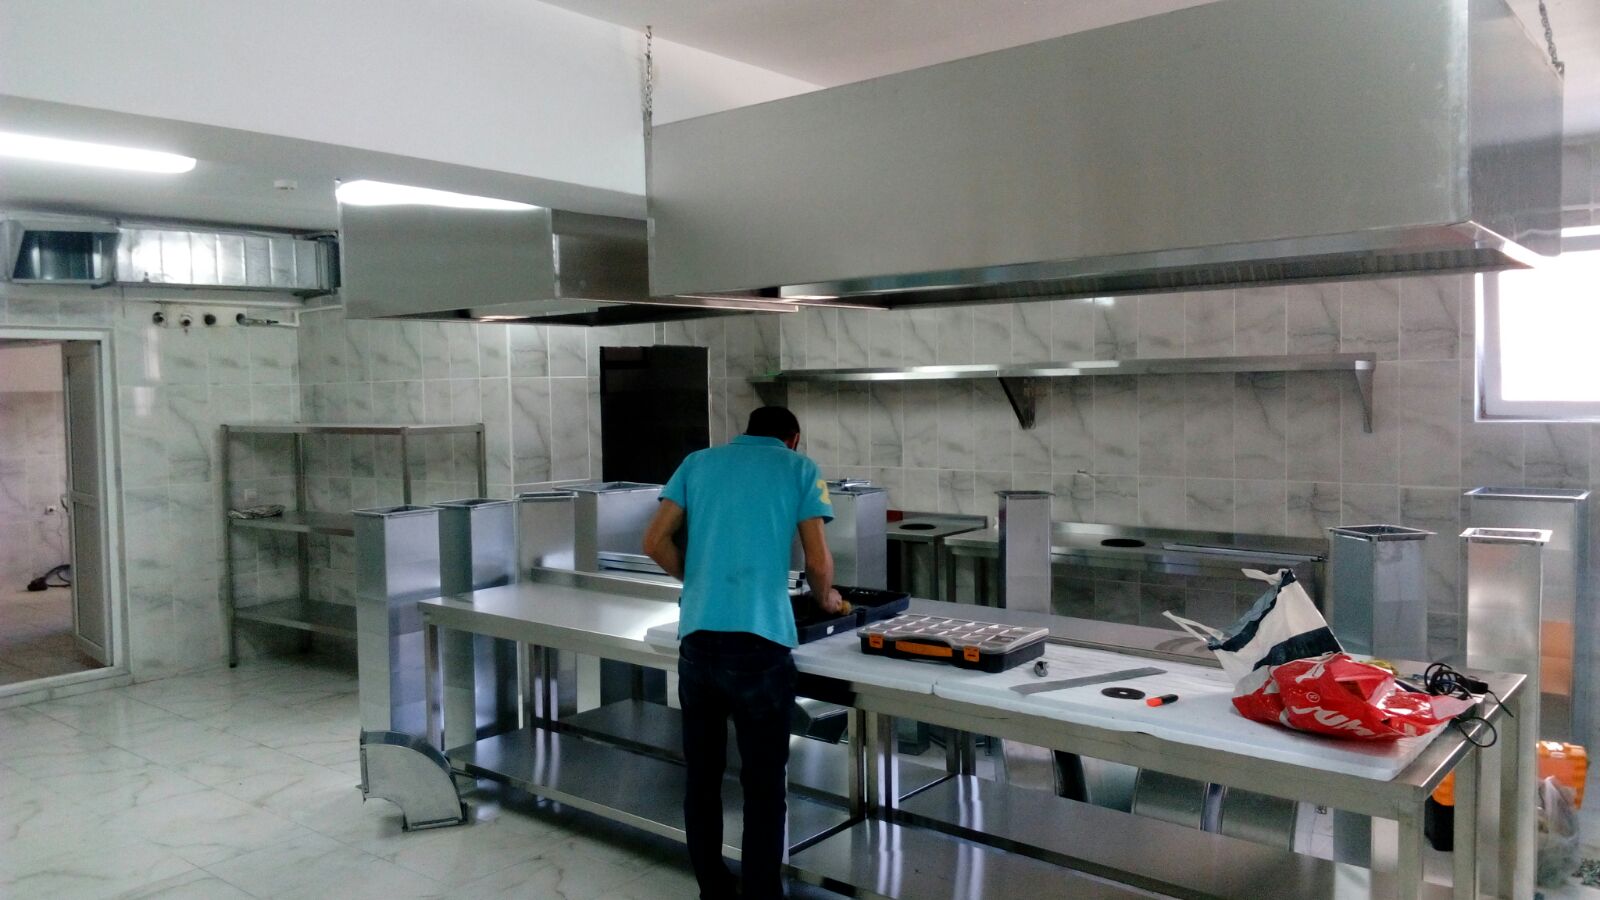   Endüstriyel mutfak inox ürünleri krom paslanmaz malzeme köfte tezgahı ocağı 0549 549 76 09